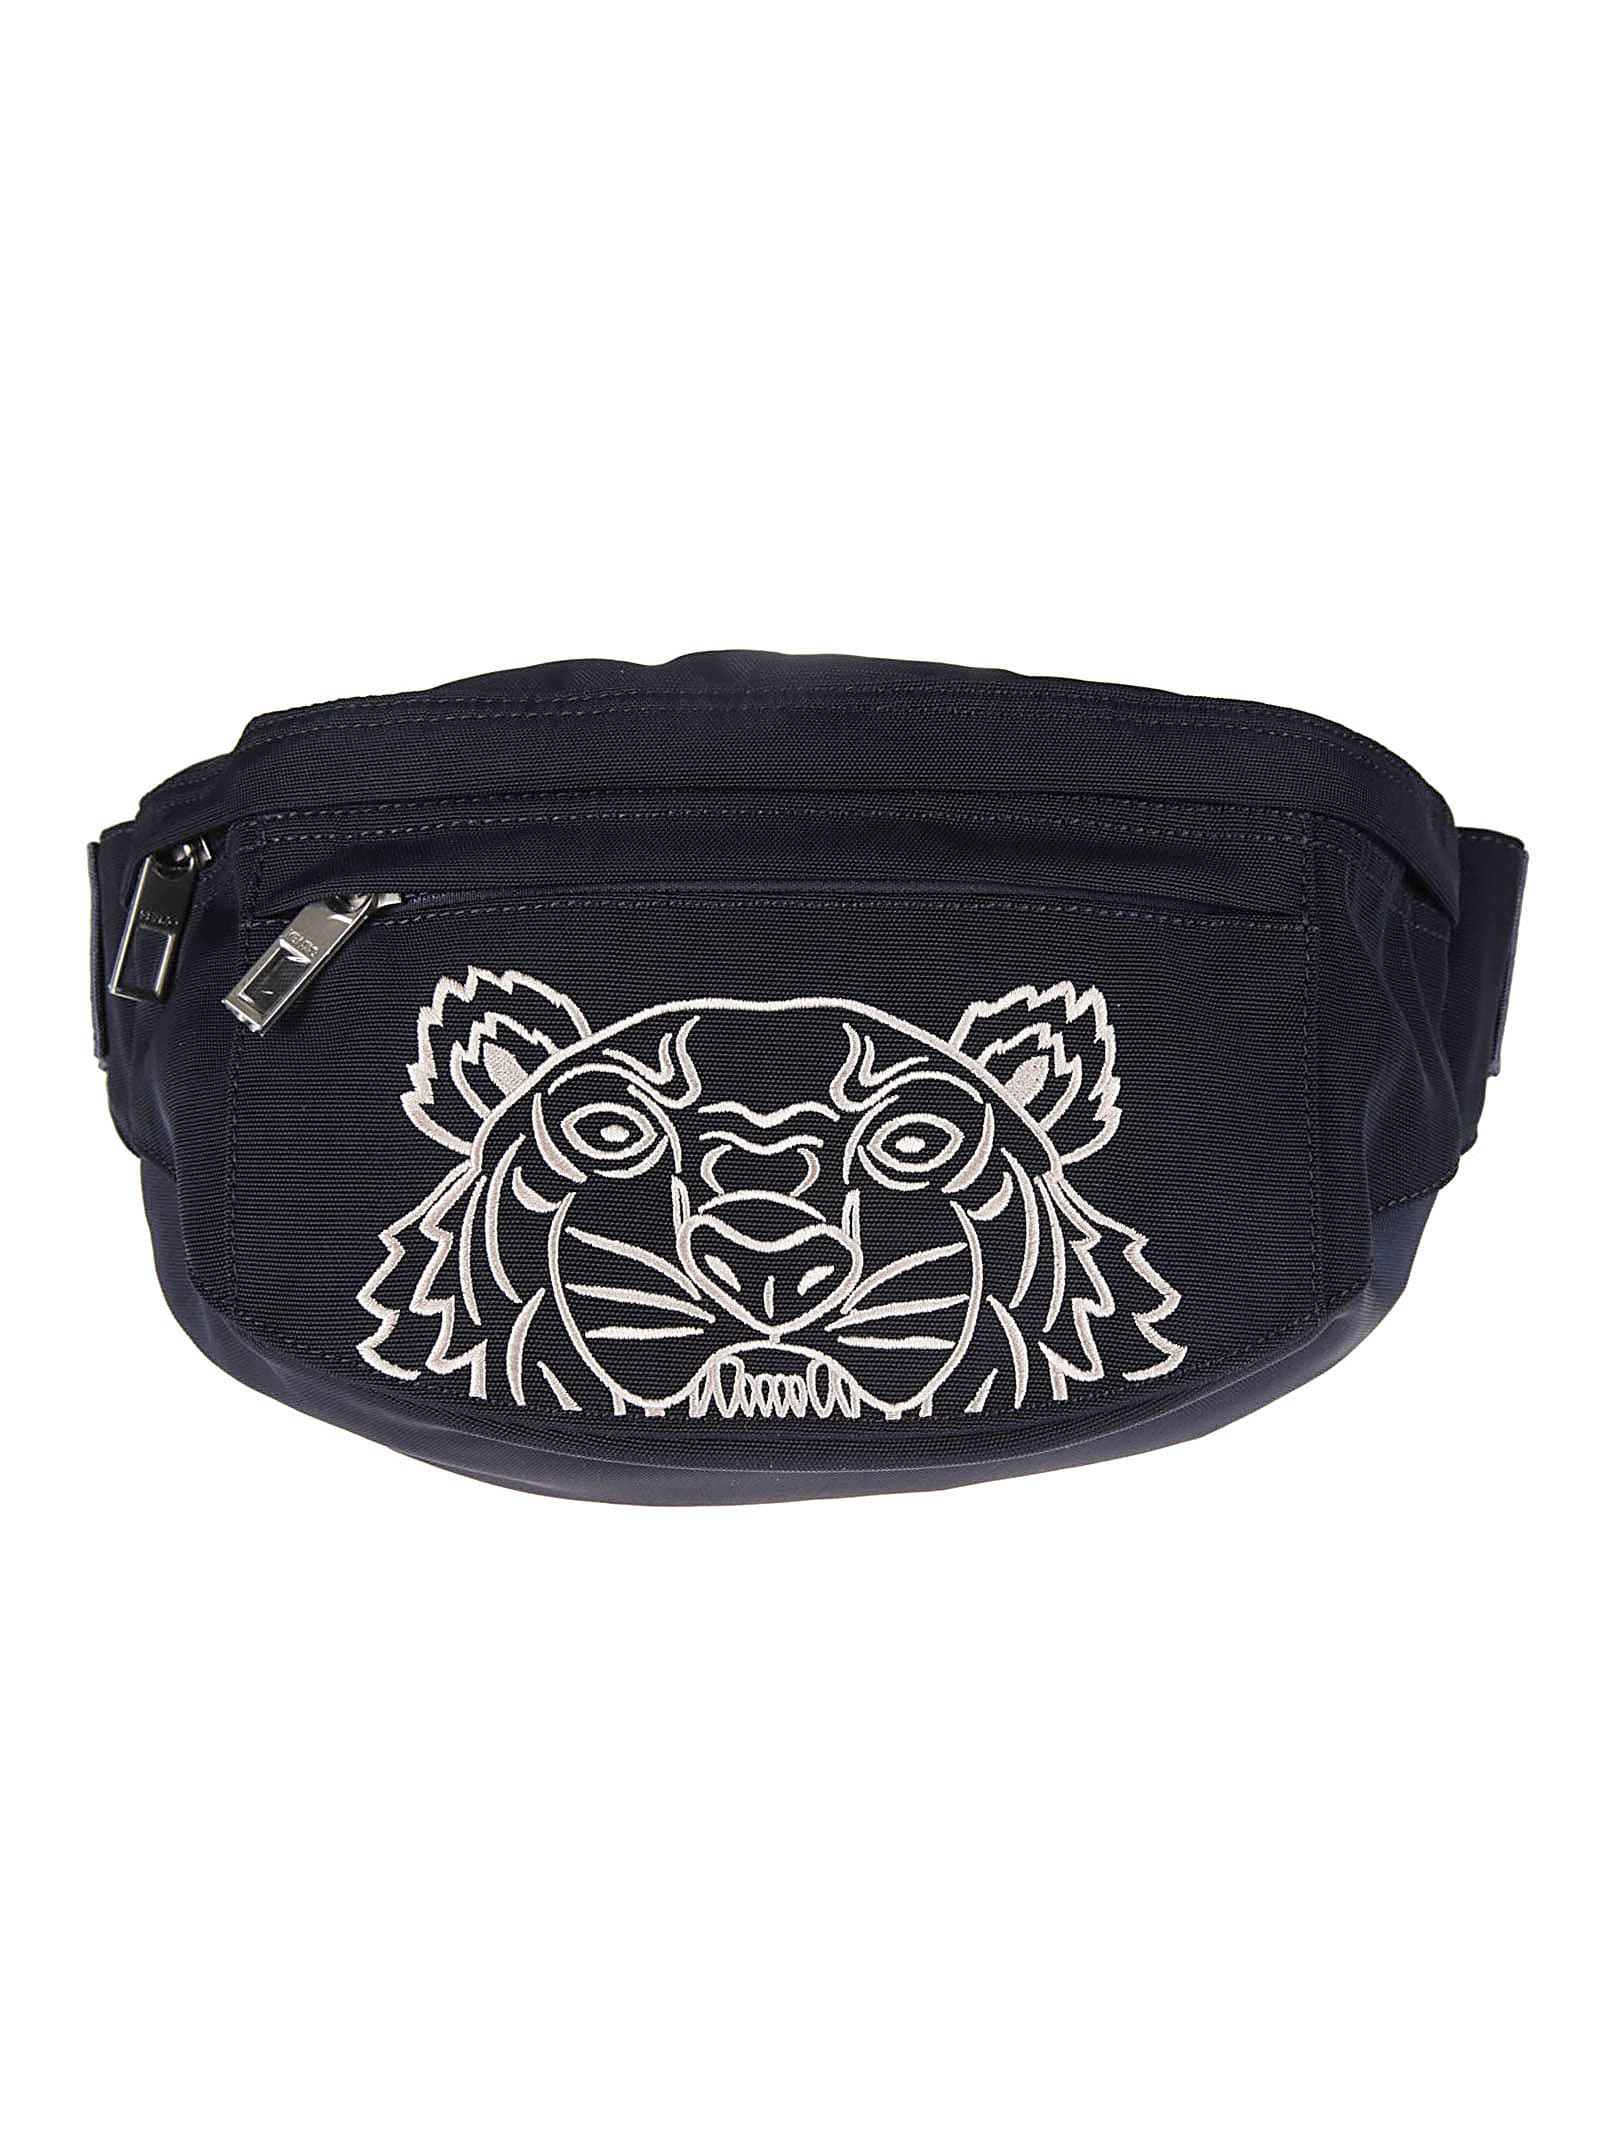 Kenzo Spring Embroidered Belt Bag